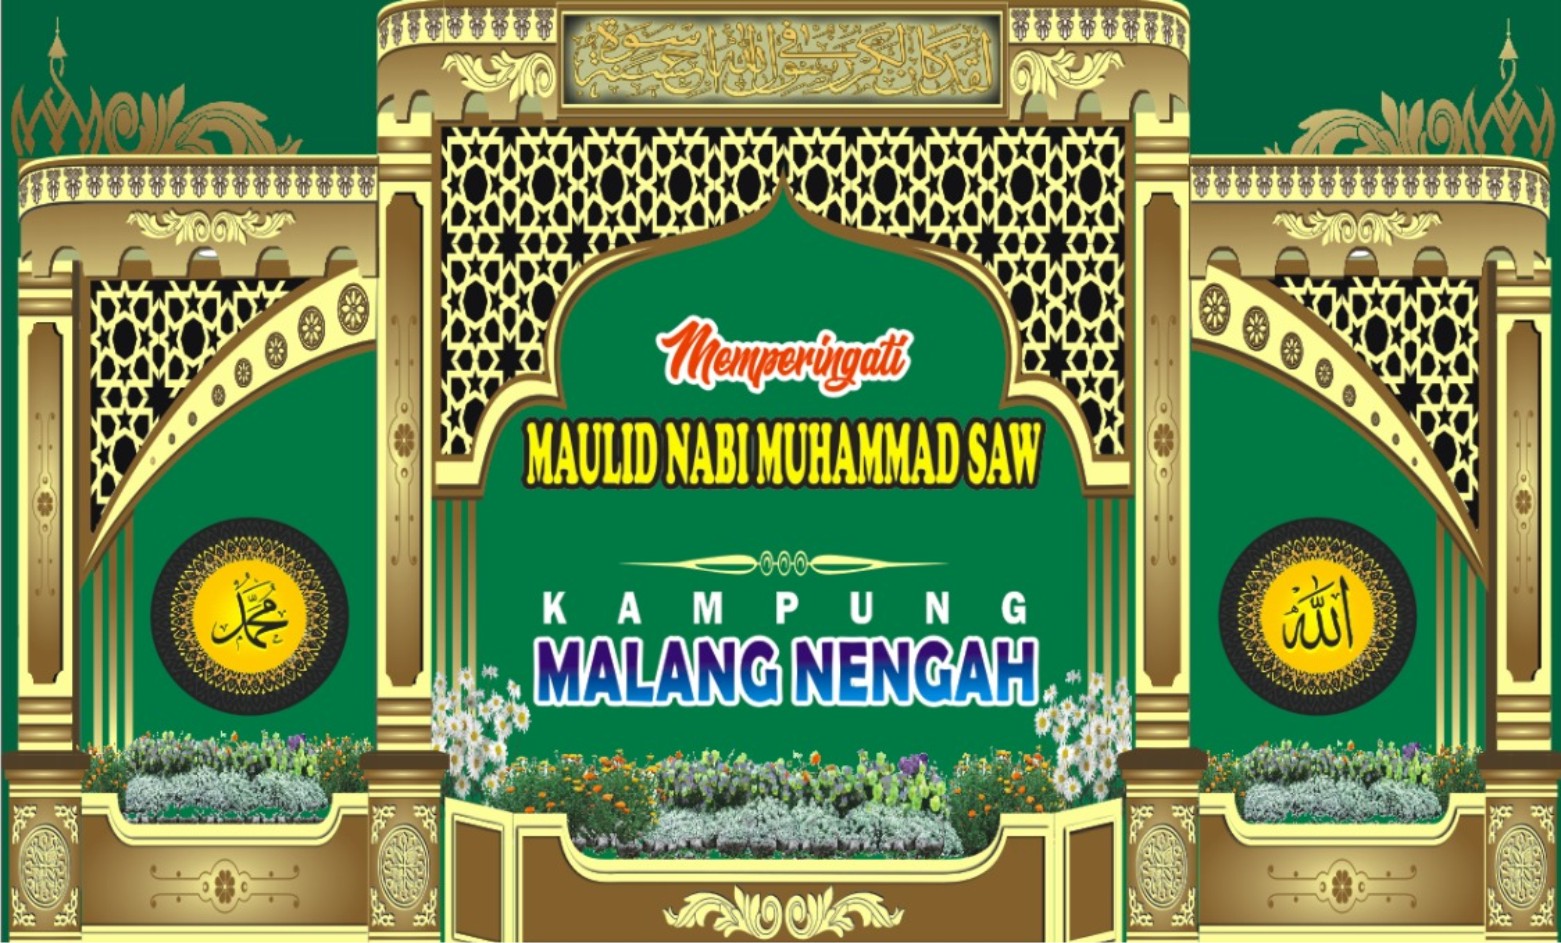 Sáng tạo với Spanduk Ramadhan - Nuzulul Quran - Spanduk design để truyền tải thông điệp ý nghĩa trong tháng Ramadan. Hãy tìm hiểu thêm về ý tưởng thiết kế và hoạt động này thông qua hình ảnh liên quan. Hãy cùng nhau đưa thông điệp đến với cộng đồng.